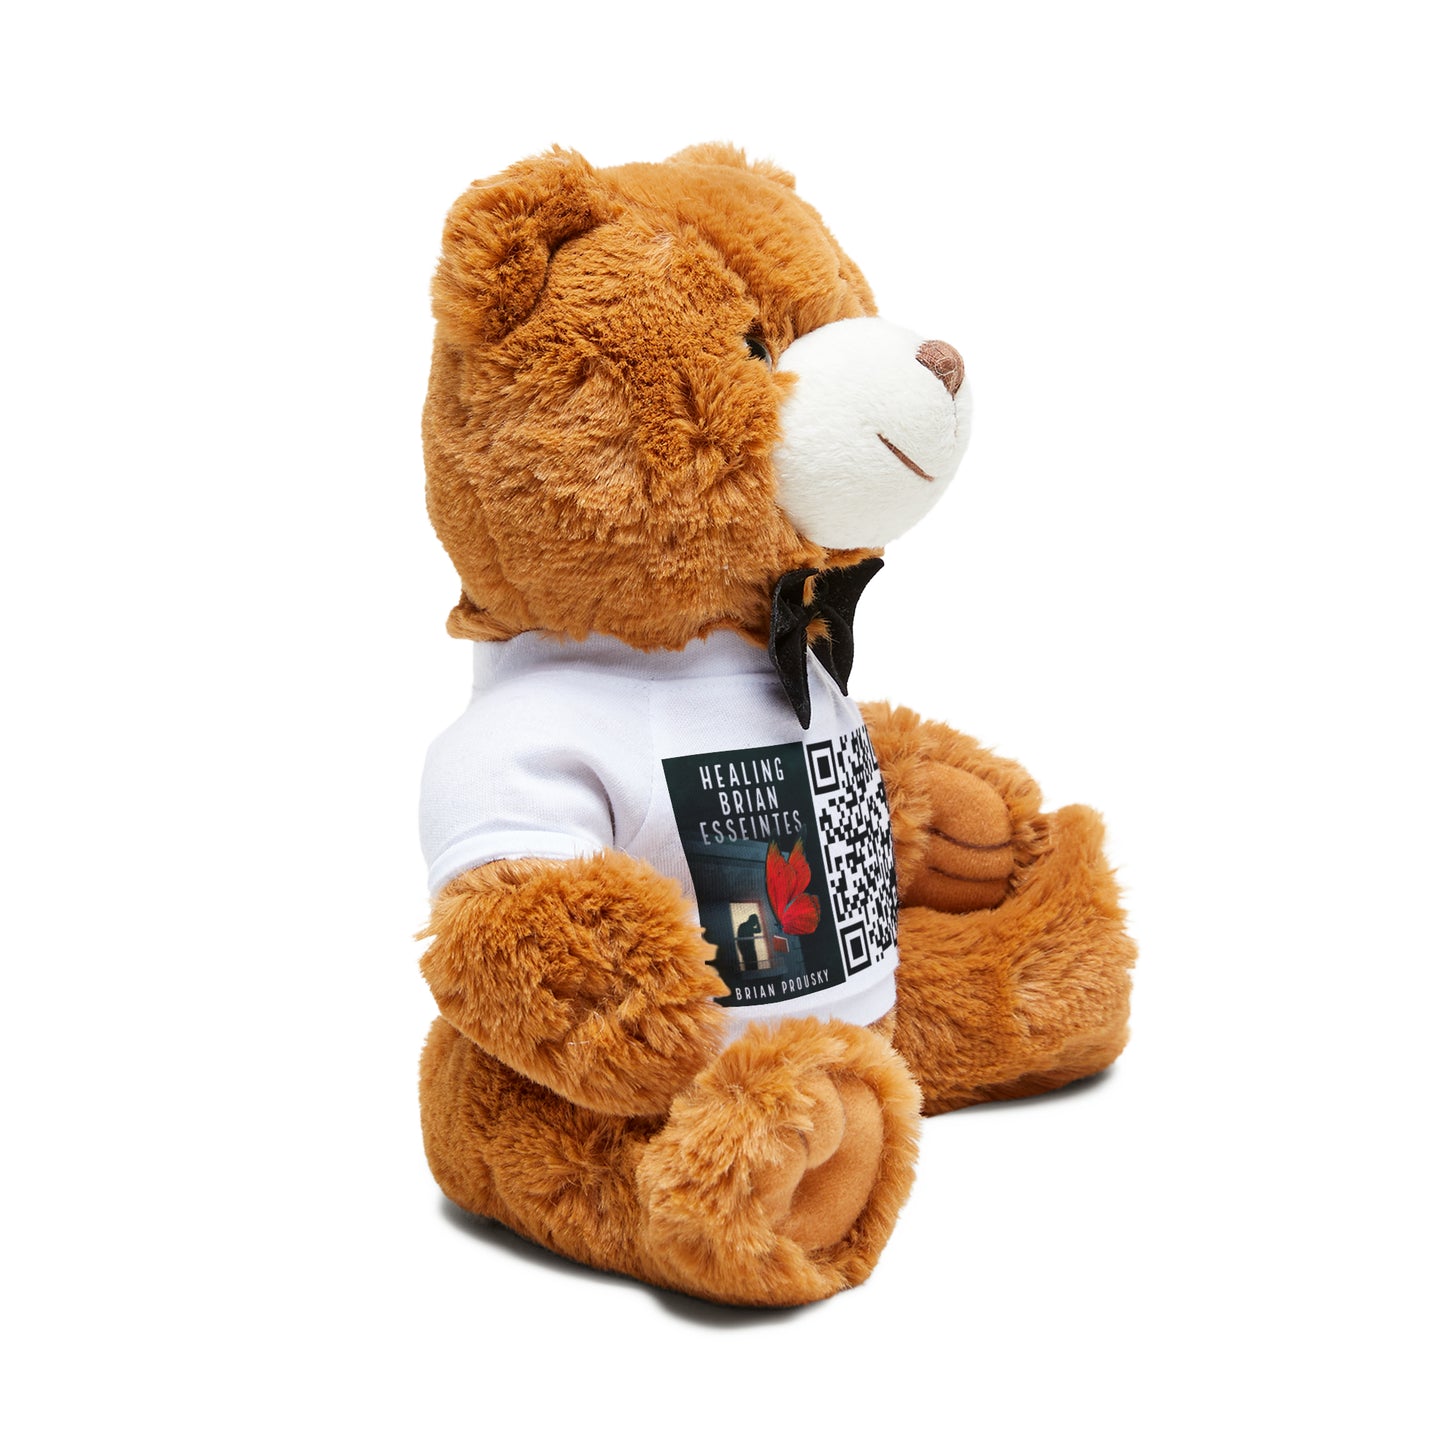 Healing Brian Esseintes - Teddy Bear